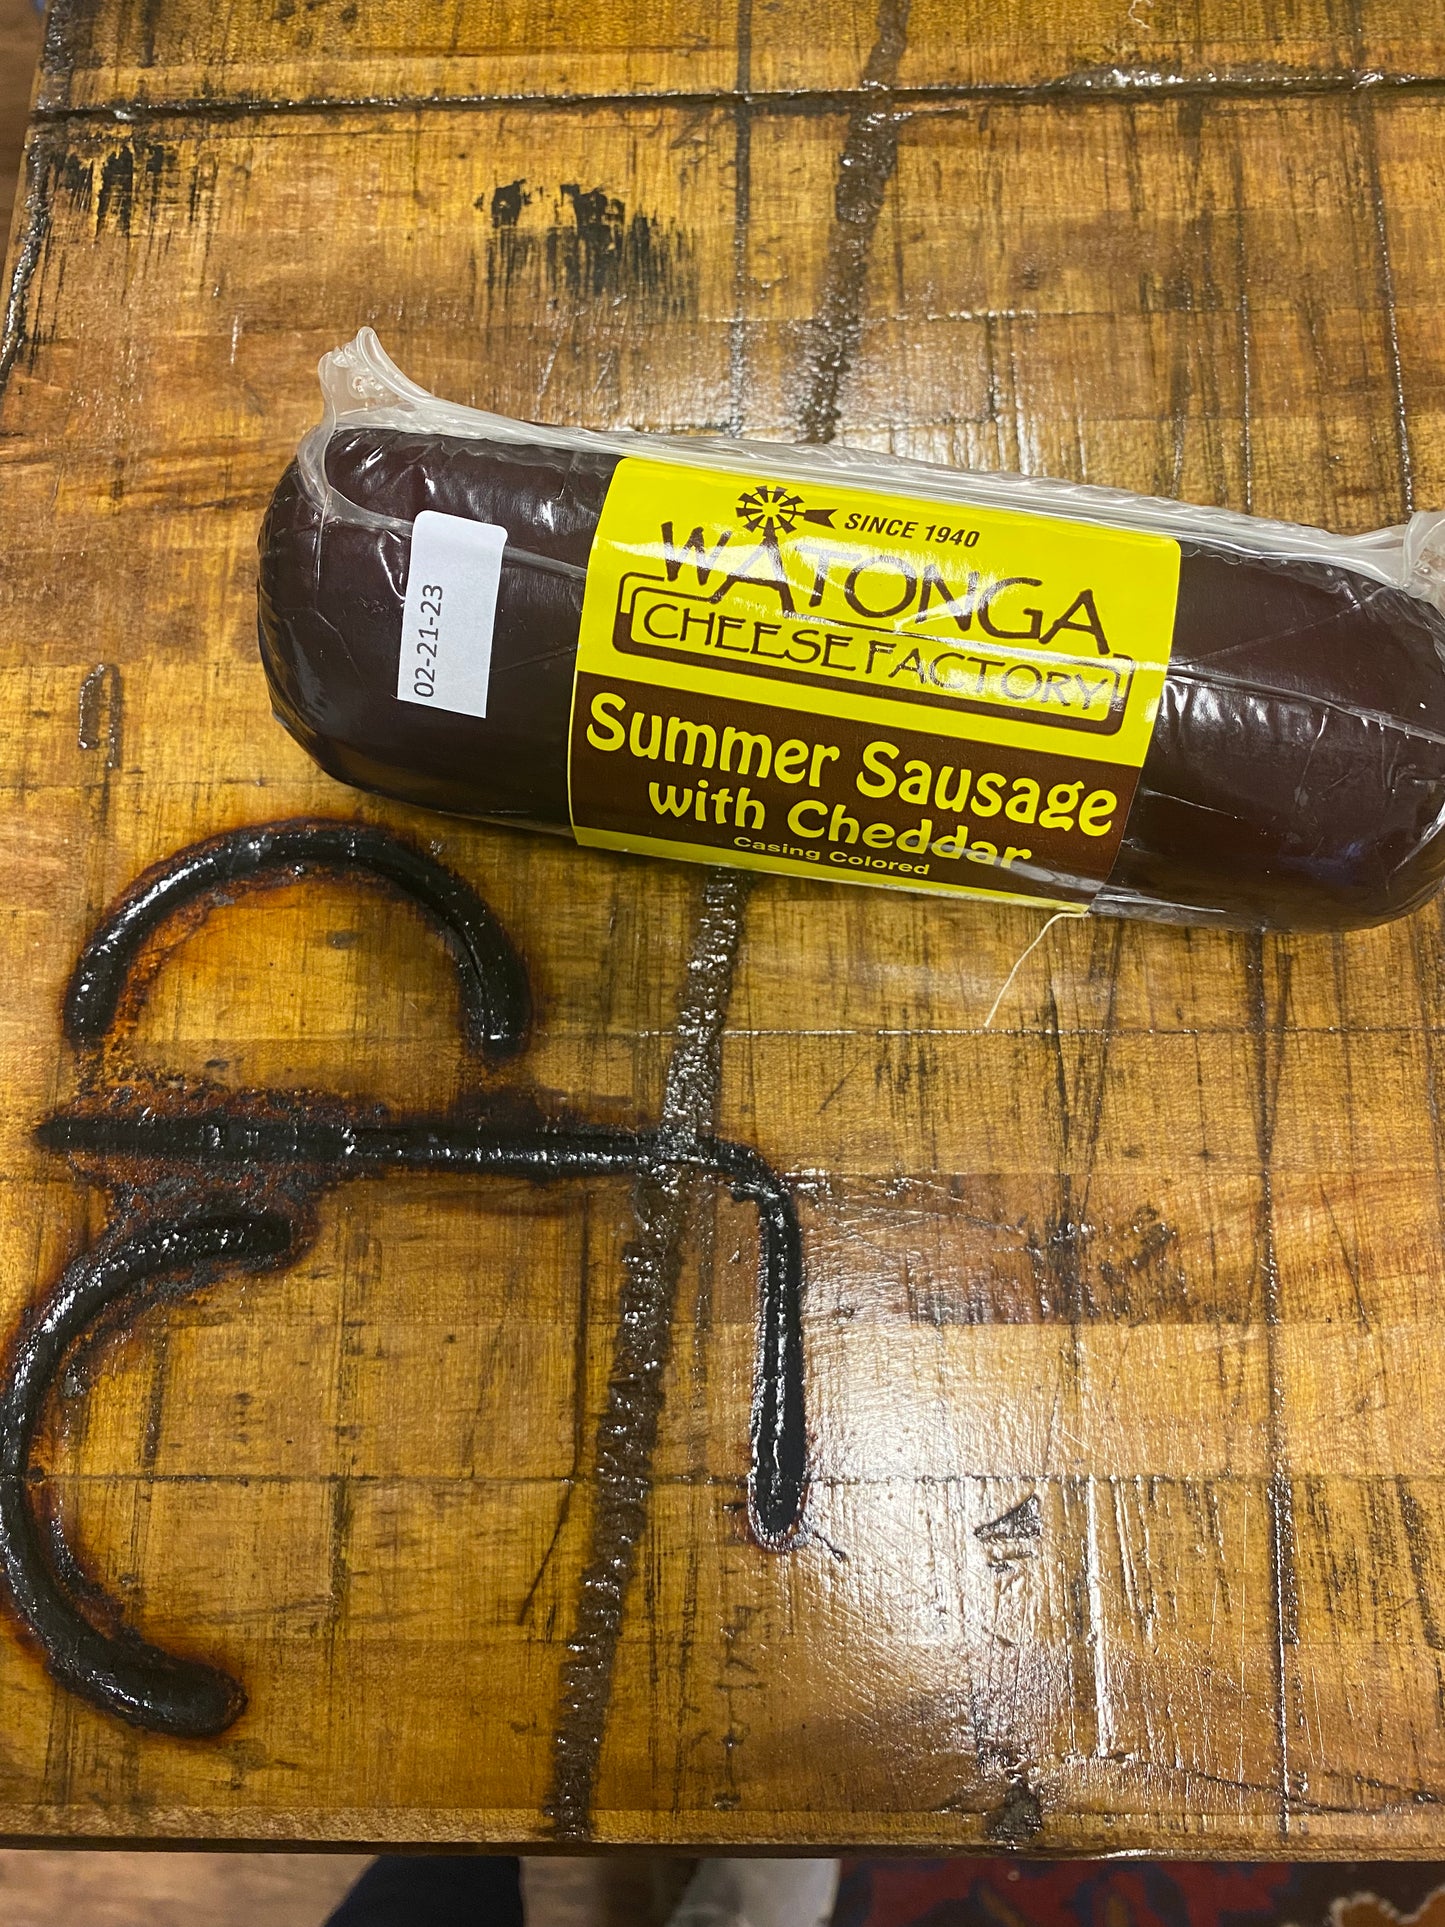 Watonga Summer Sausage with Cheddar